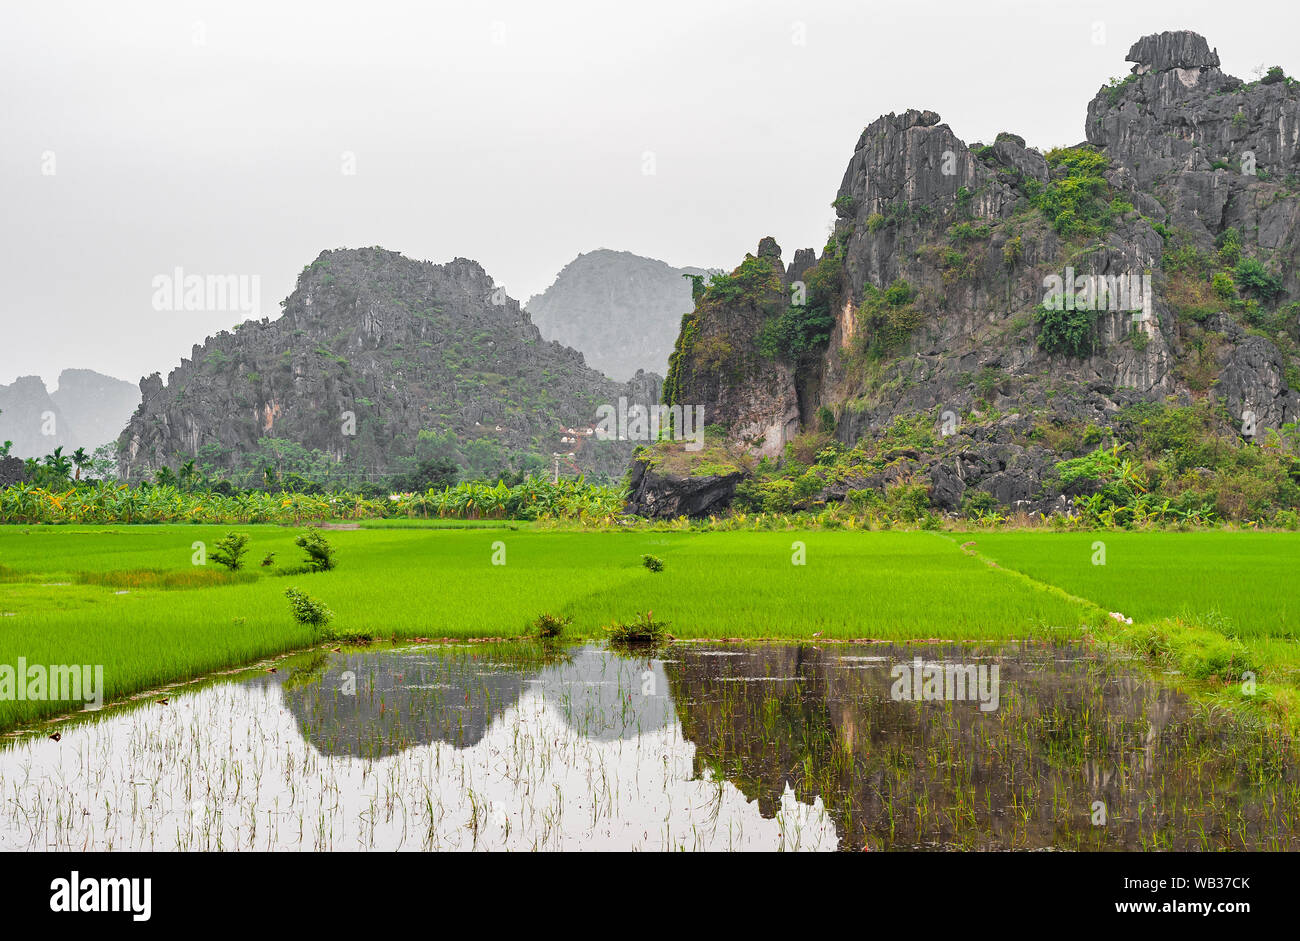 Die majestätischen Reisfeld Landwirtschaft Felder von Hoa Binh in zwischen den geologischen karst Felsformationen in der Nähe von Hanoi, Vietnam. Stockfoto